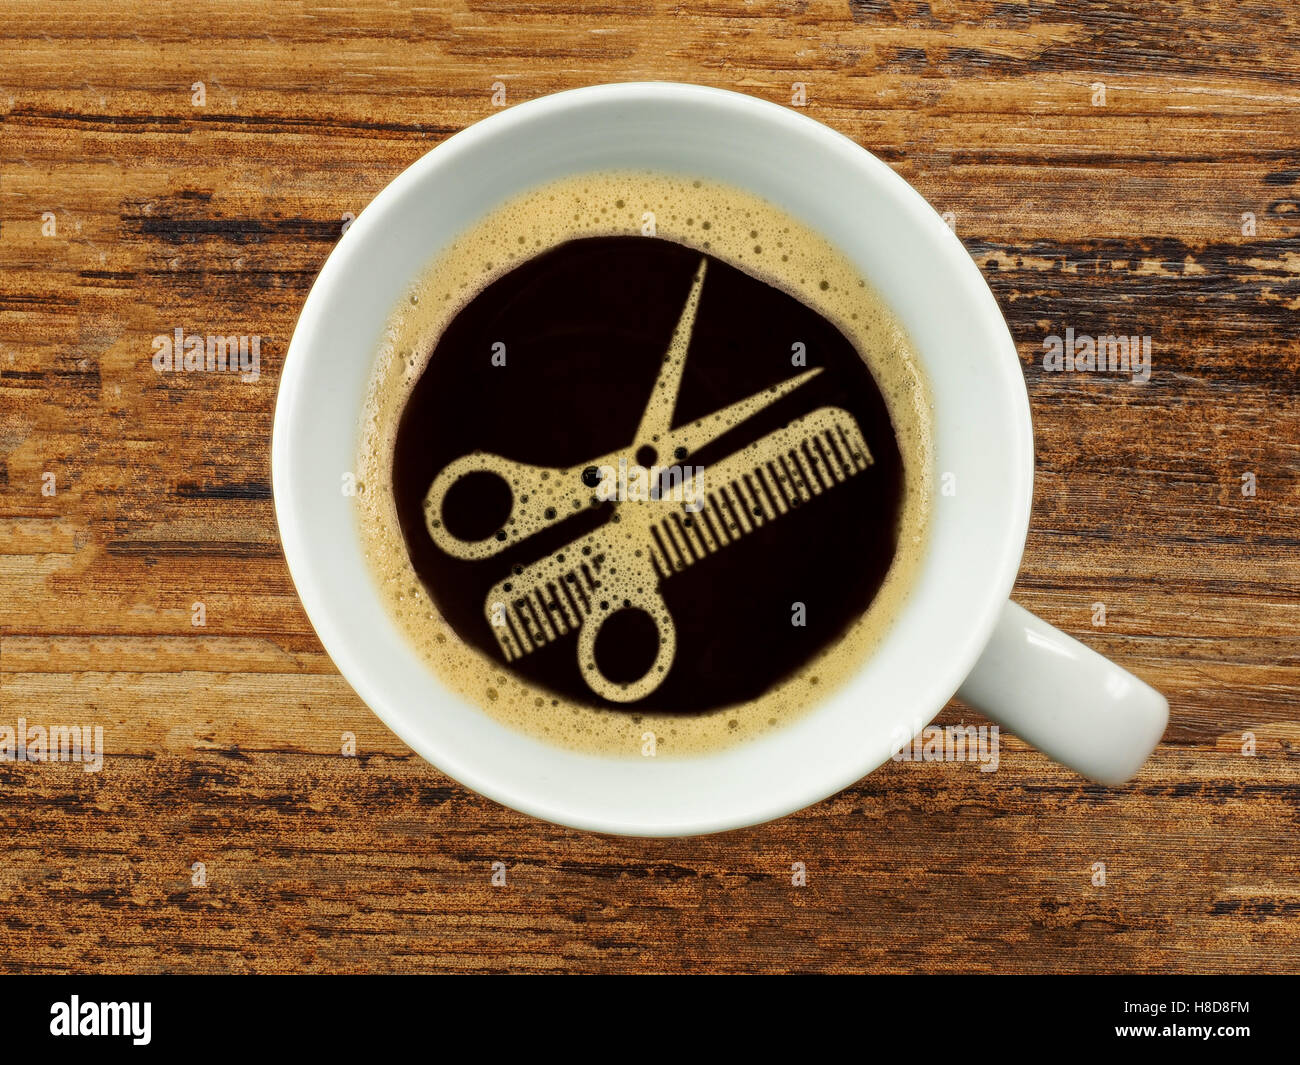 Kaffee beim Friseur - extra Service für die Wartezeit Stockfoto